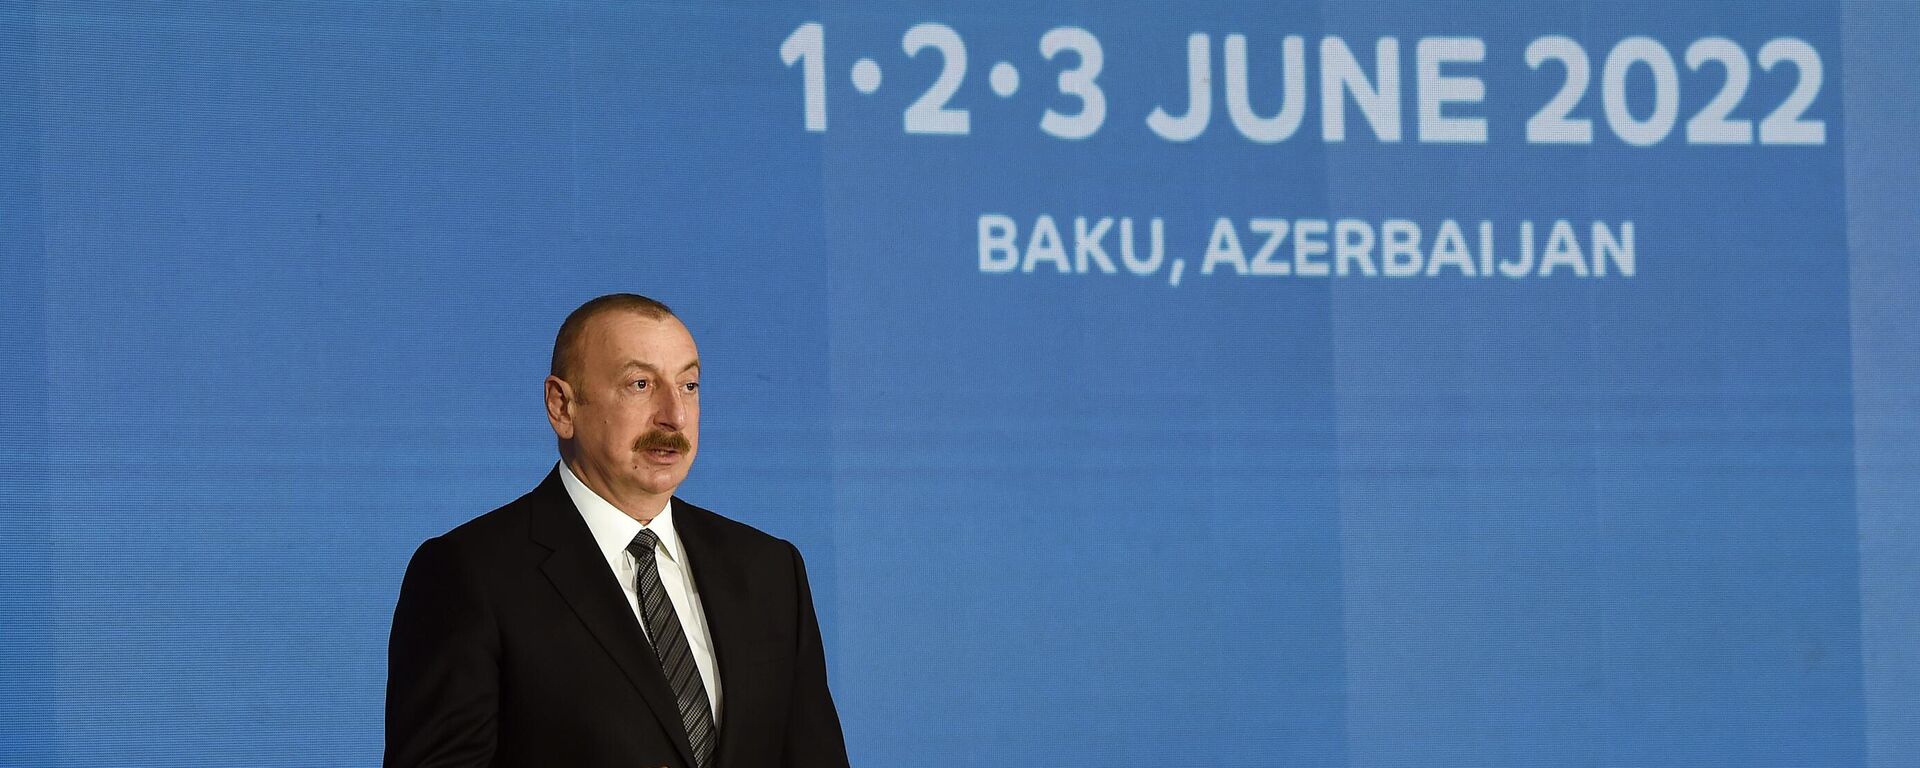 Президент Азербайджана Ильхам Алиев на церемонии открытия Бакинской энергетической недели - Sputnik Азербайджан, 1920, 01.06.2022